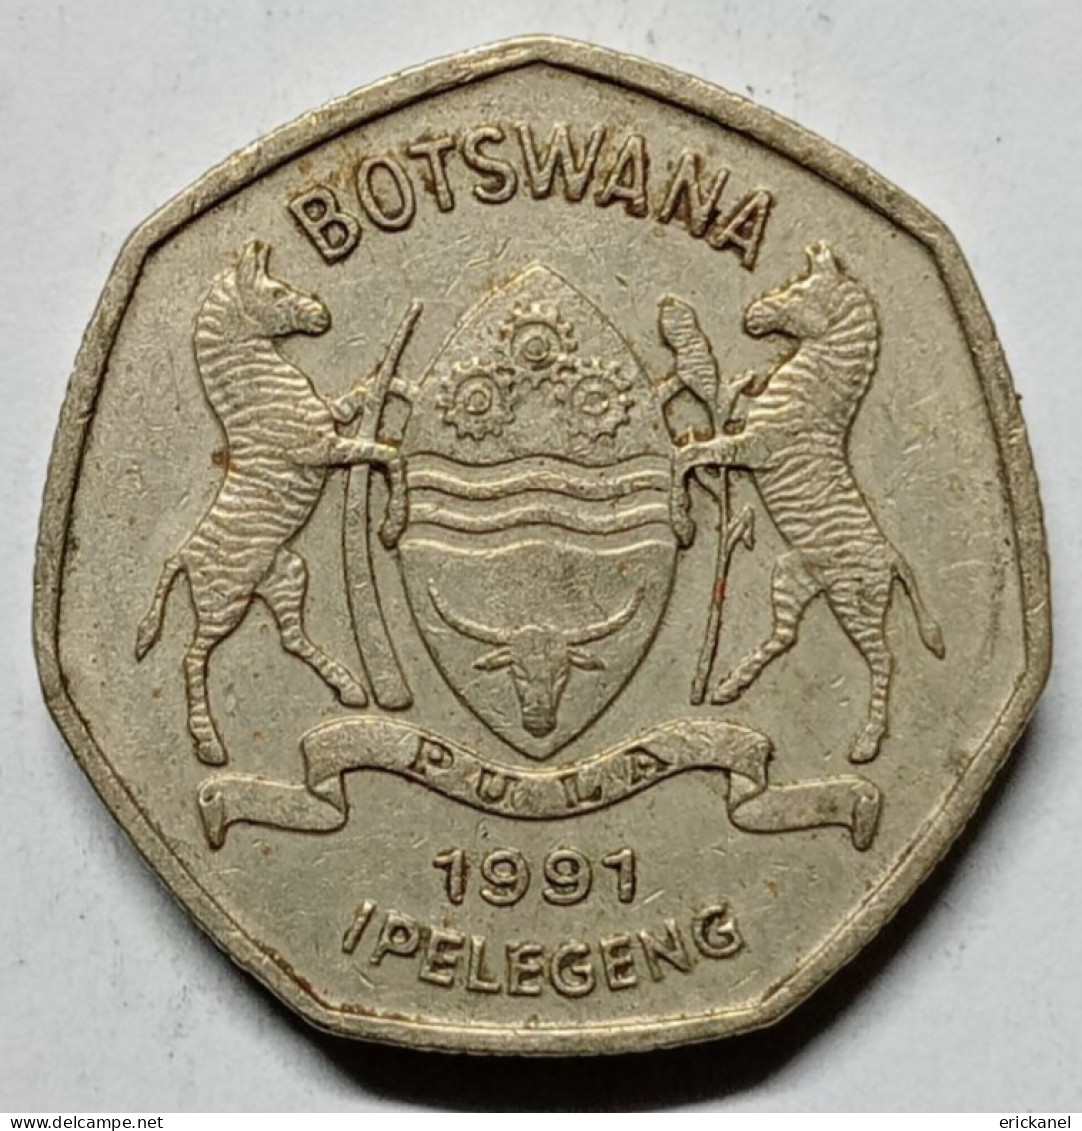 1991 BOTSWANA  1 PULA - GREAT DETAILS - Botswana